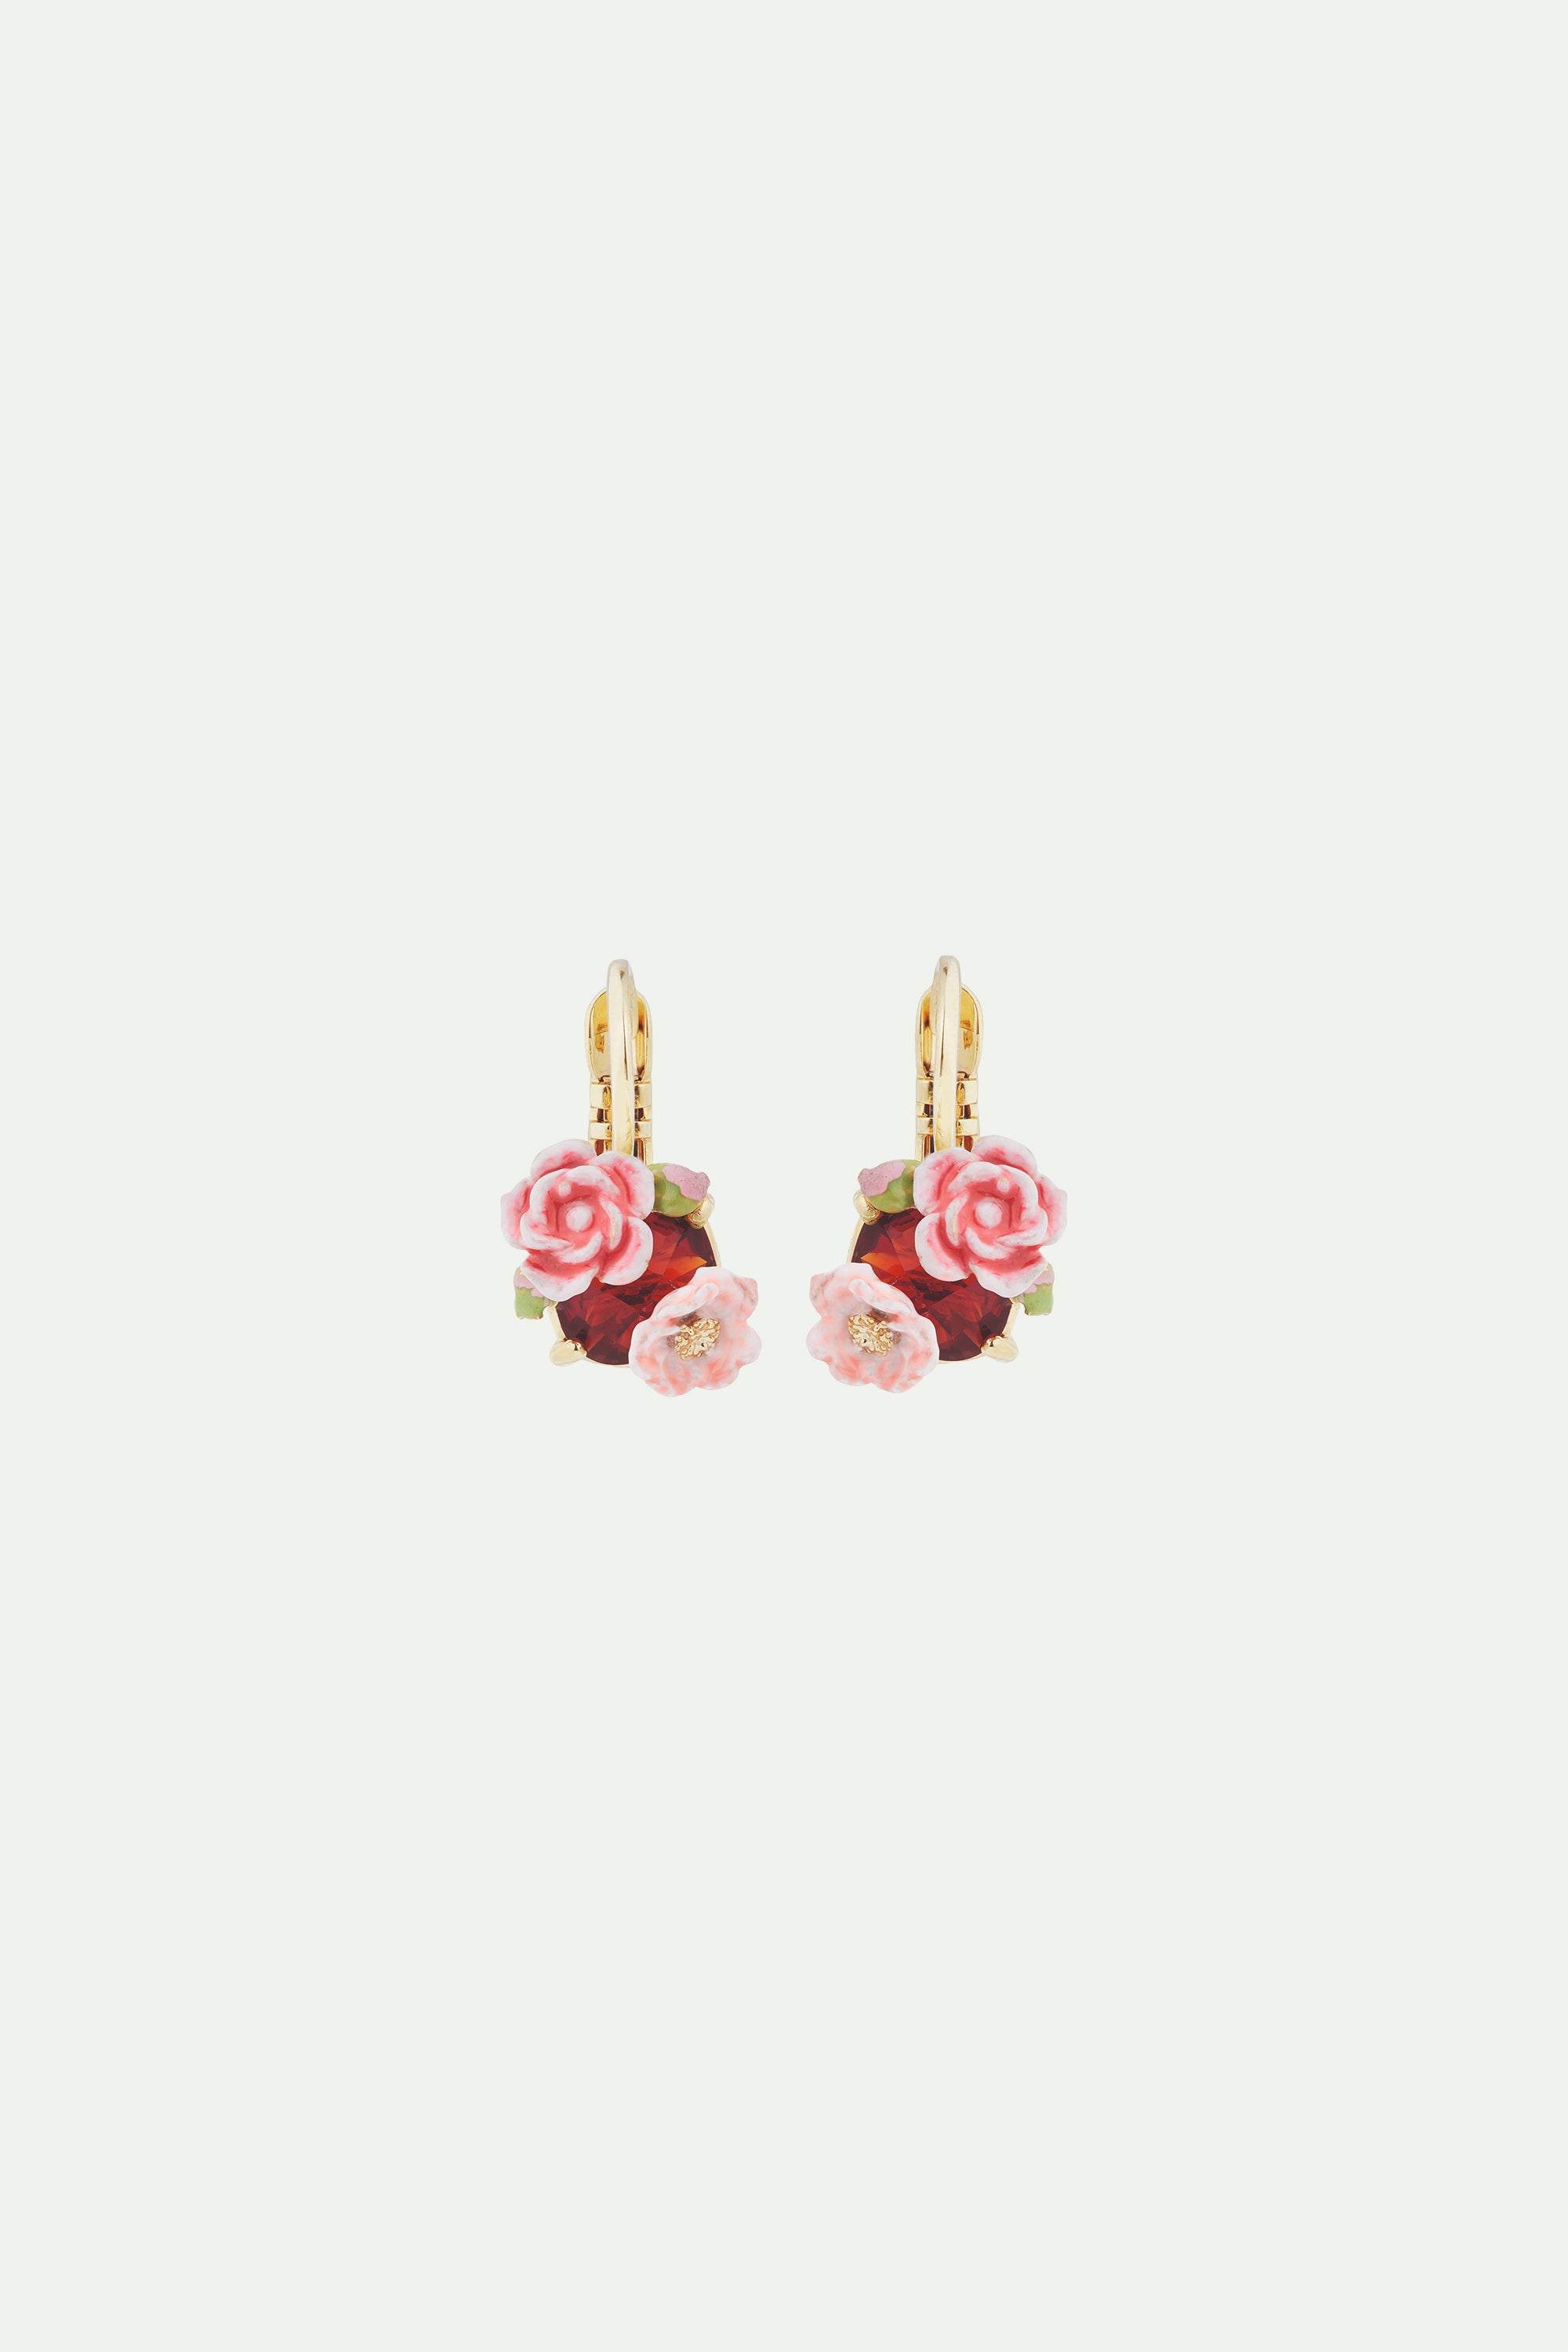 Boucles d'oreilles dormeuses roses d'églantier et pierre rouge grenat